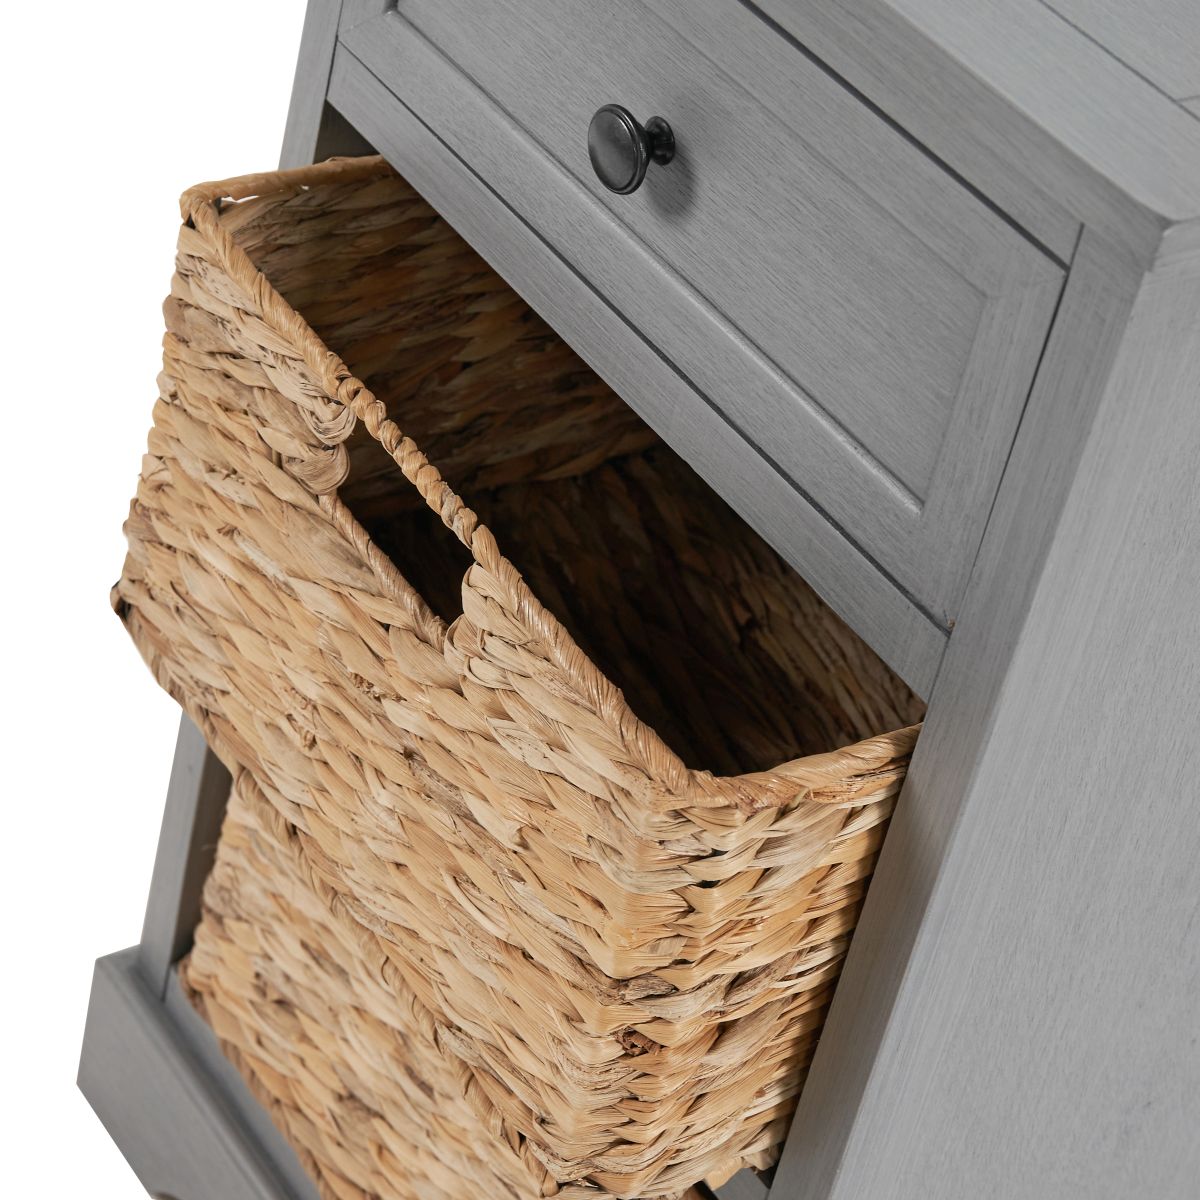 Devonshire Grey Wood 1 Drawer 2 Basket Unit